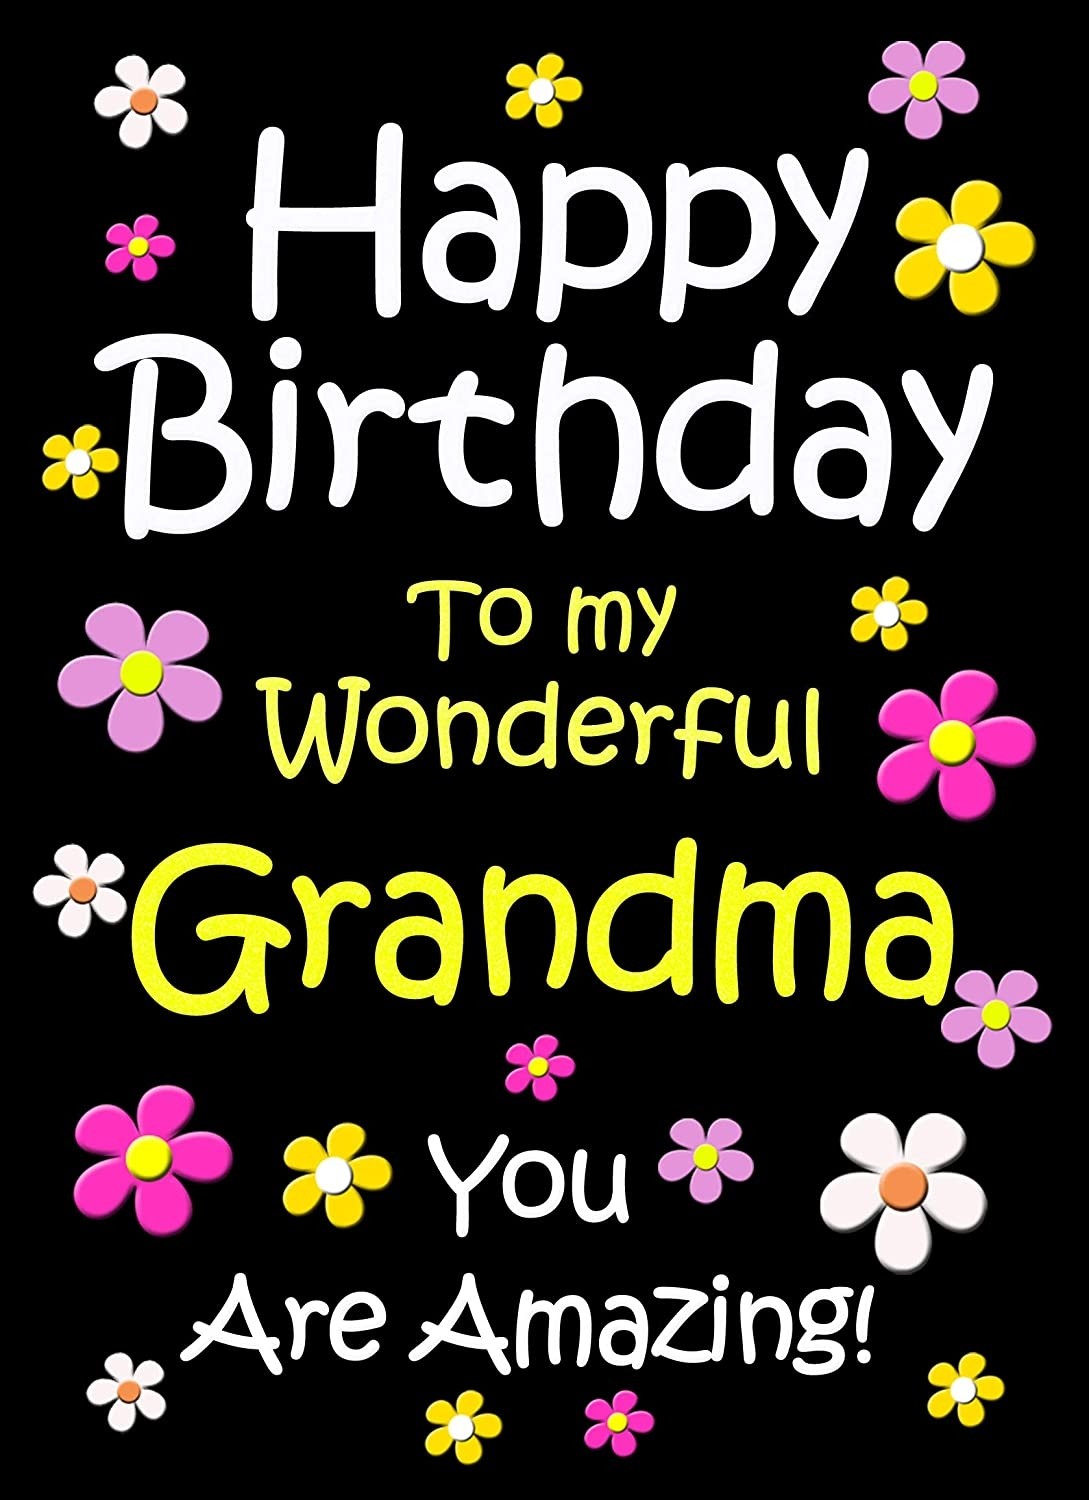 Grandma Birthday Card (Black)